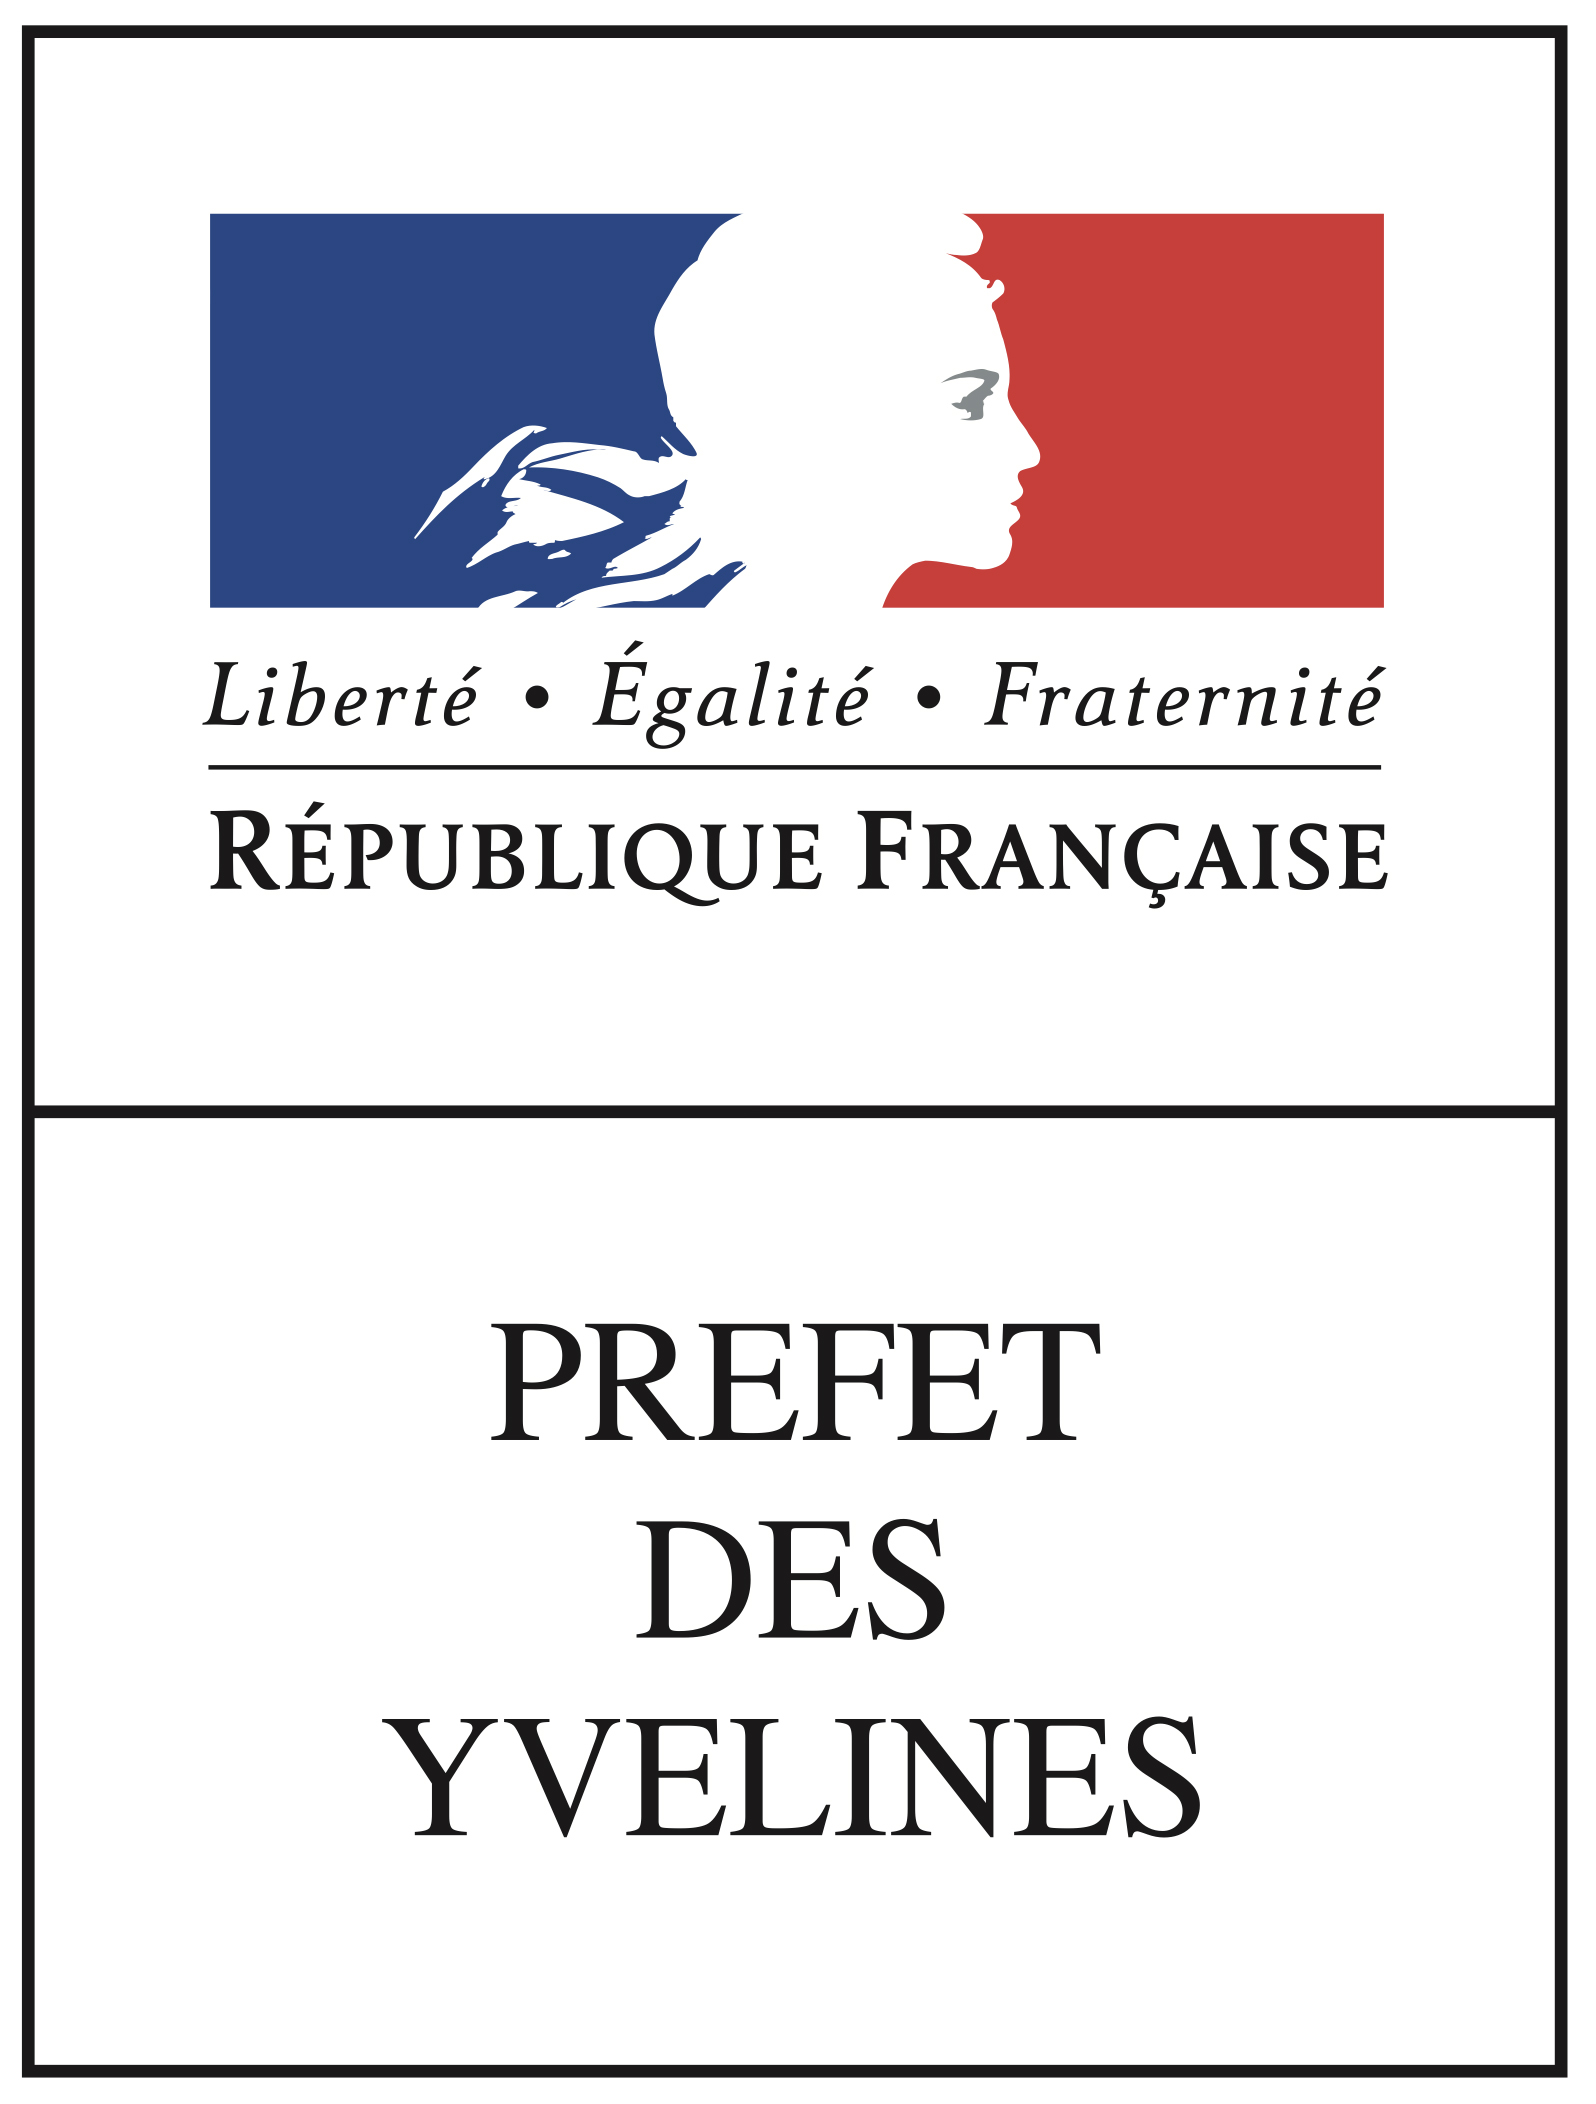 <img alt="" src="/user/pages/02.notre-accompagnement/03.pour-les-collectivites-locales/ile-de-france/03._gridlogo-copy/Logo Préfet des Yvelines.jpg?alt" />